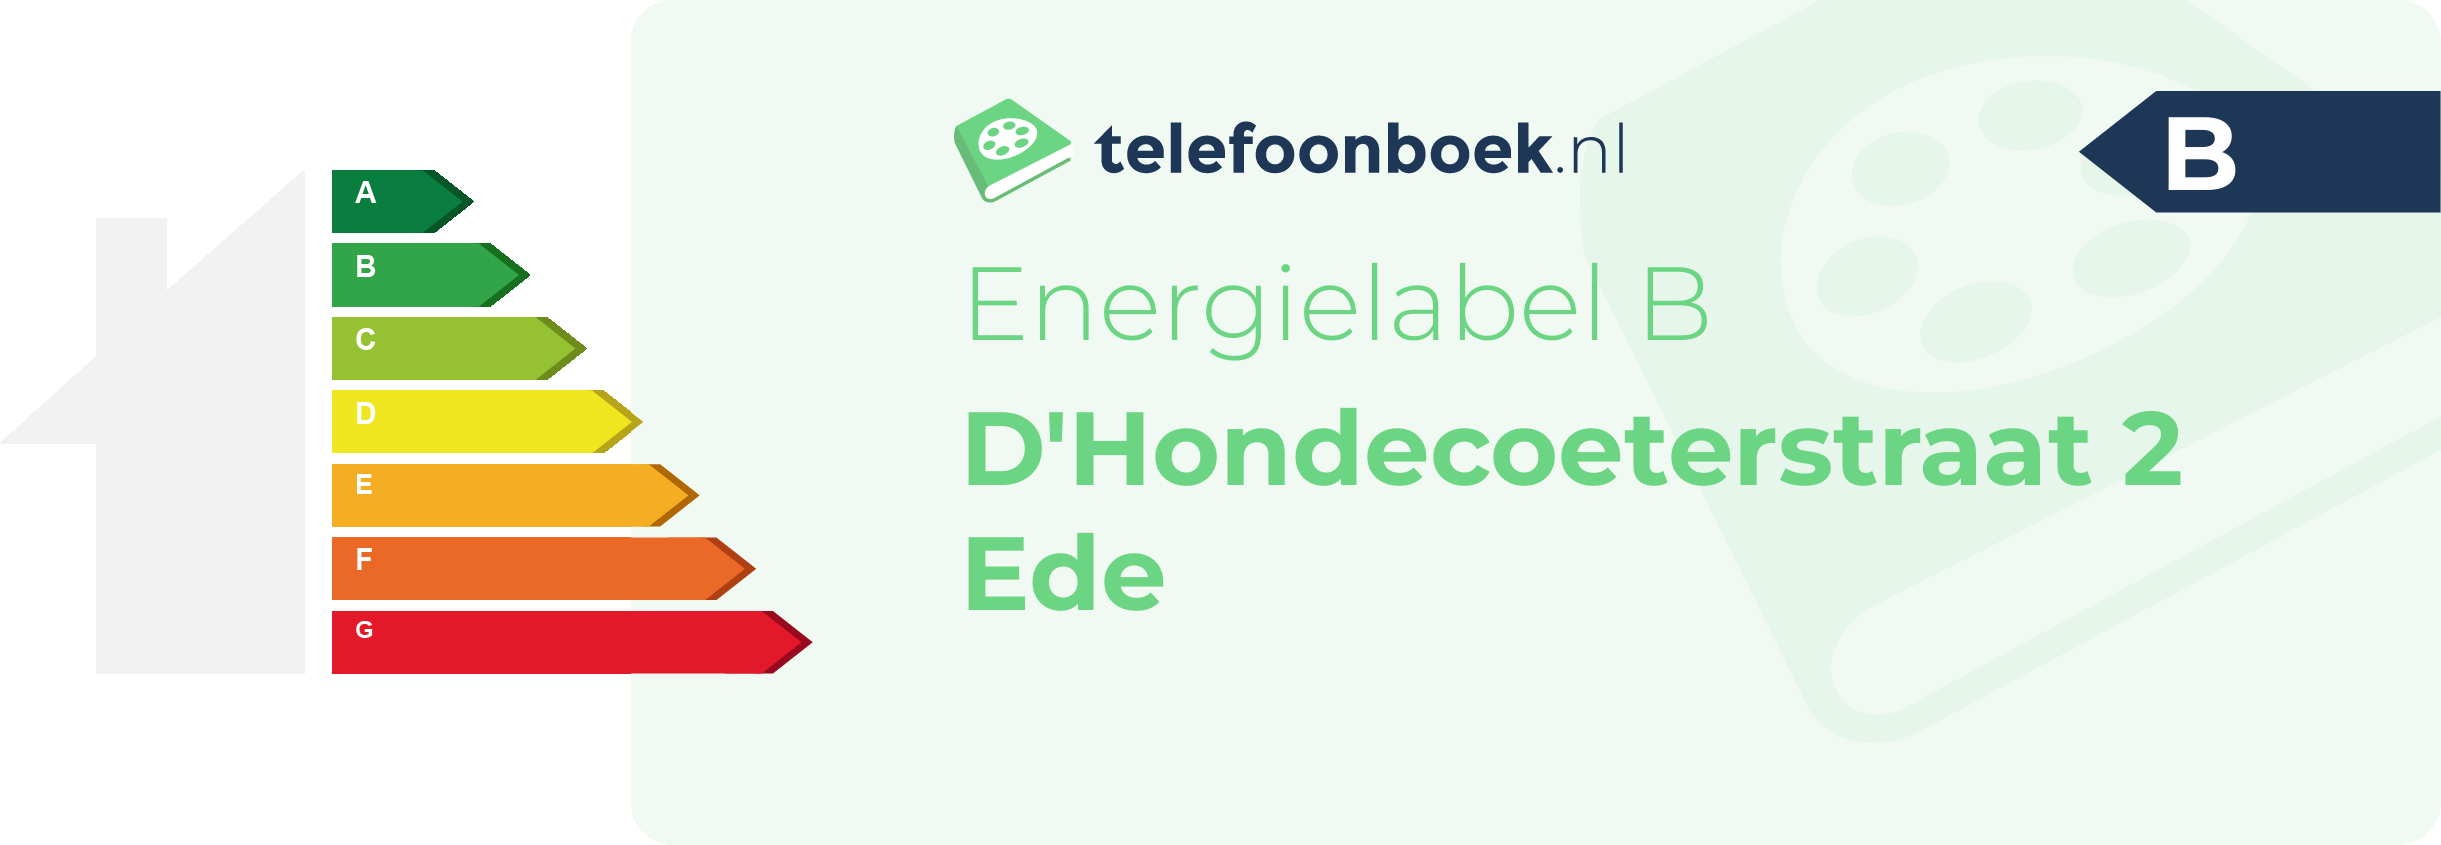 Energielabel D'Hondecoeterstraat 2 Ede